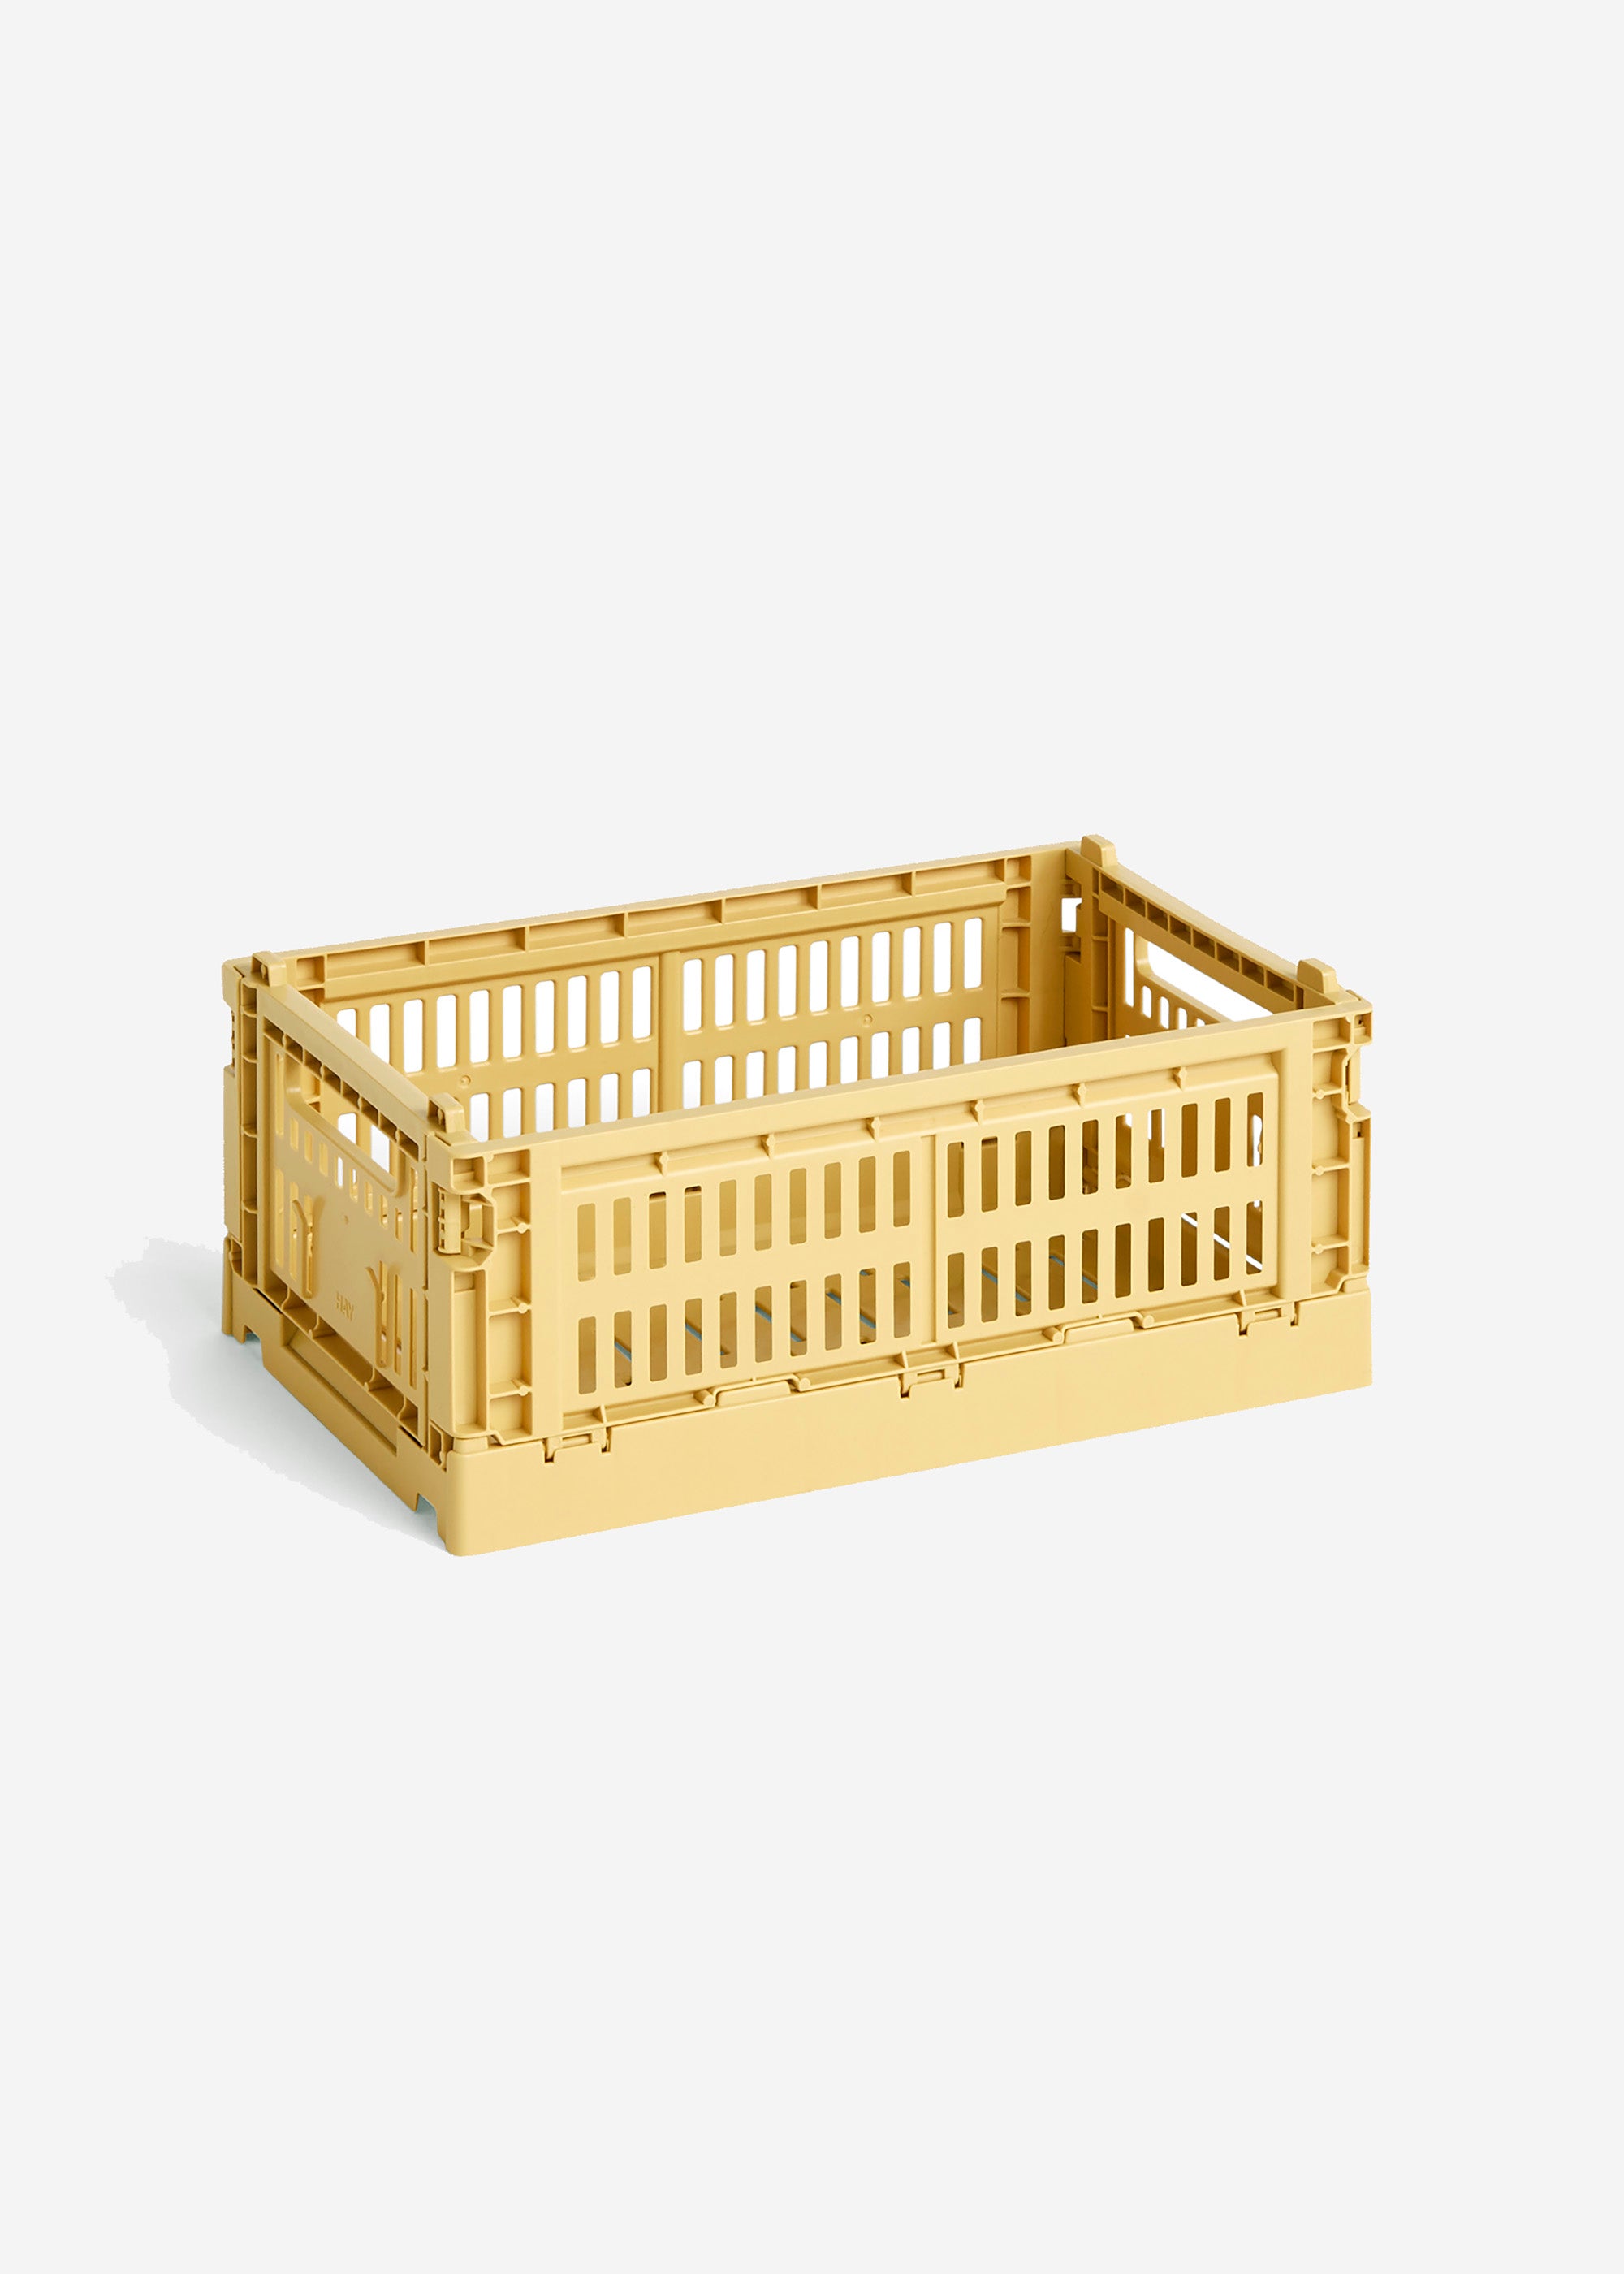 Úložný box Color Crate S skládací přepravka žlutá golden yellow